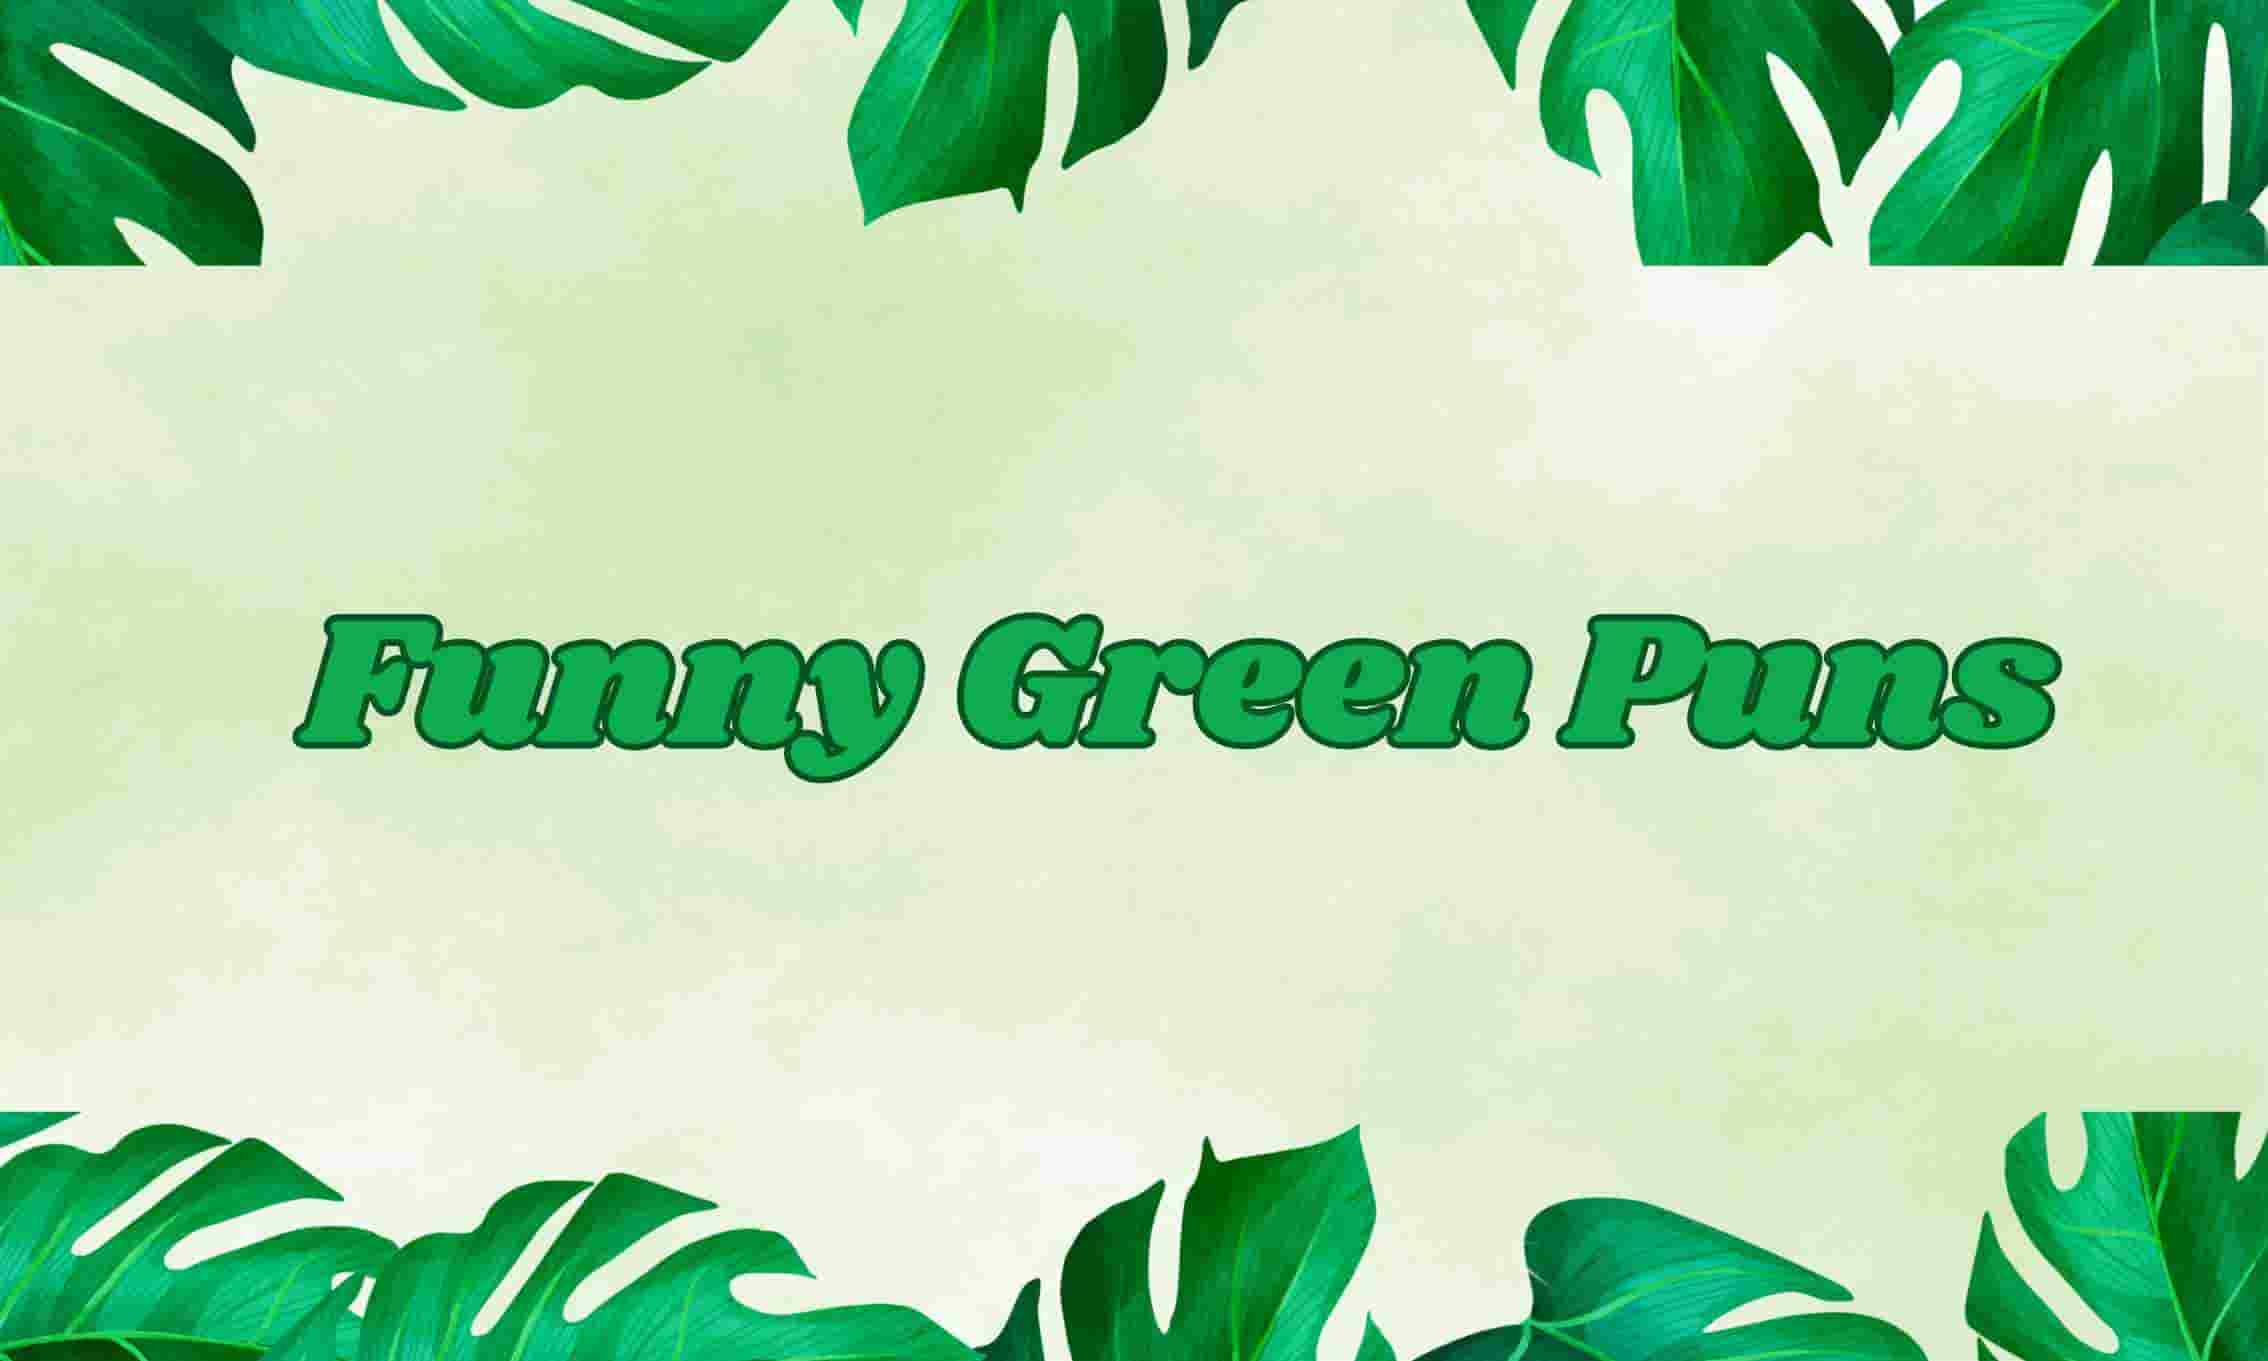 Green Puns and jokes